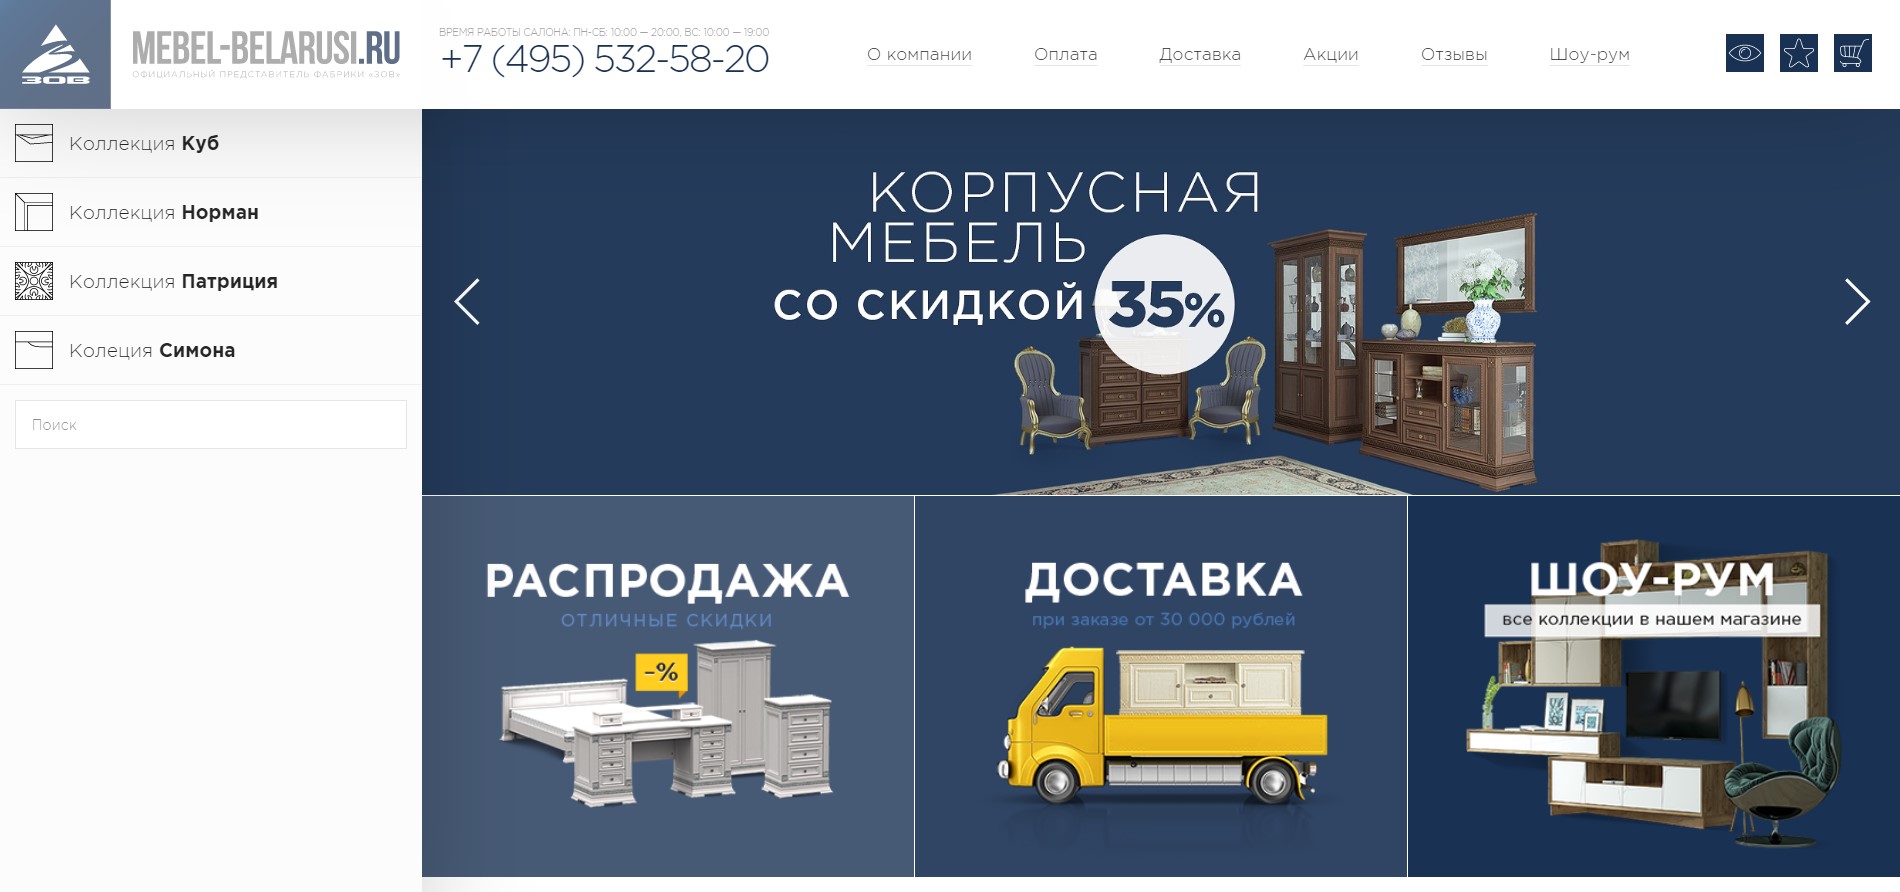 Мебель в беларуси через интернет